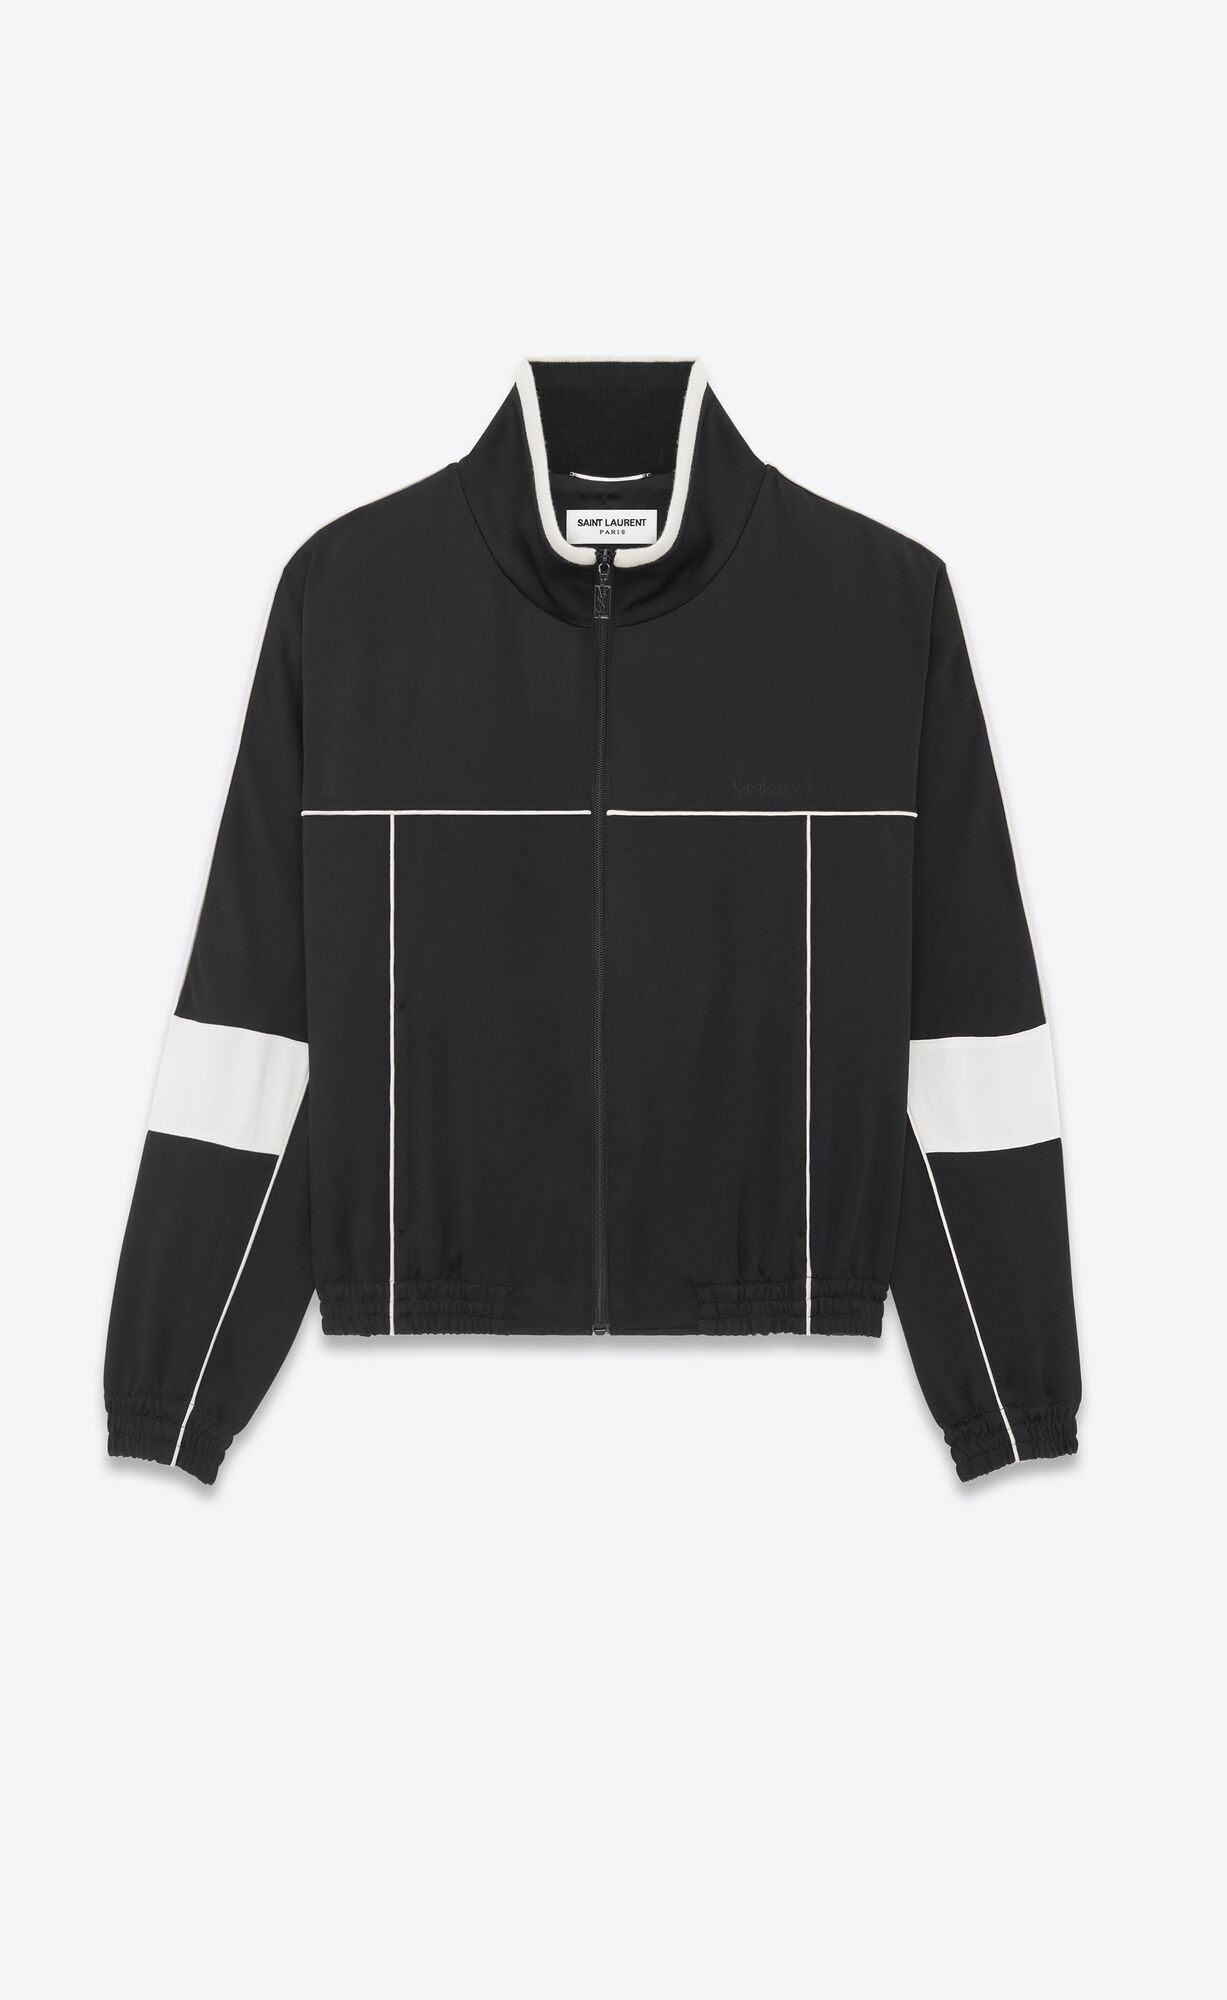 Men's Outerwear | Jackets & Coats | Saint Laurent | YSL